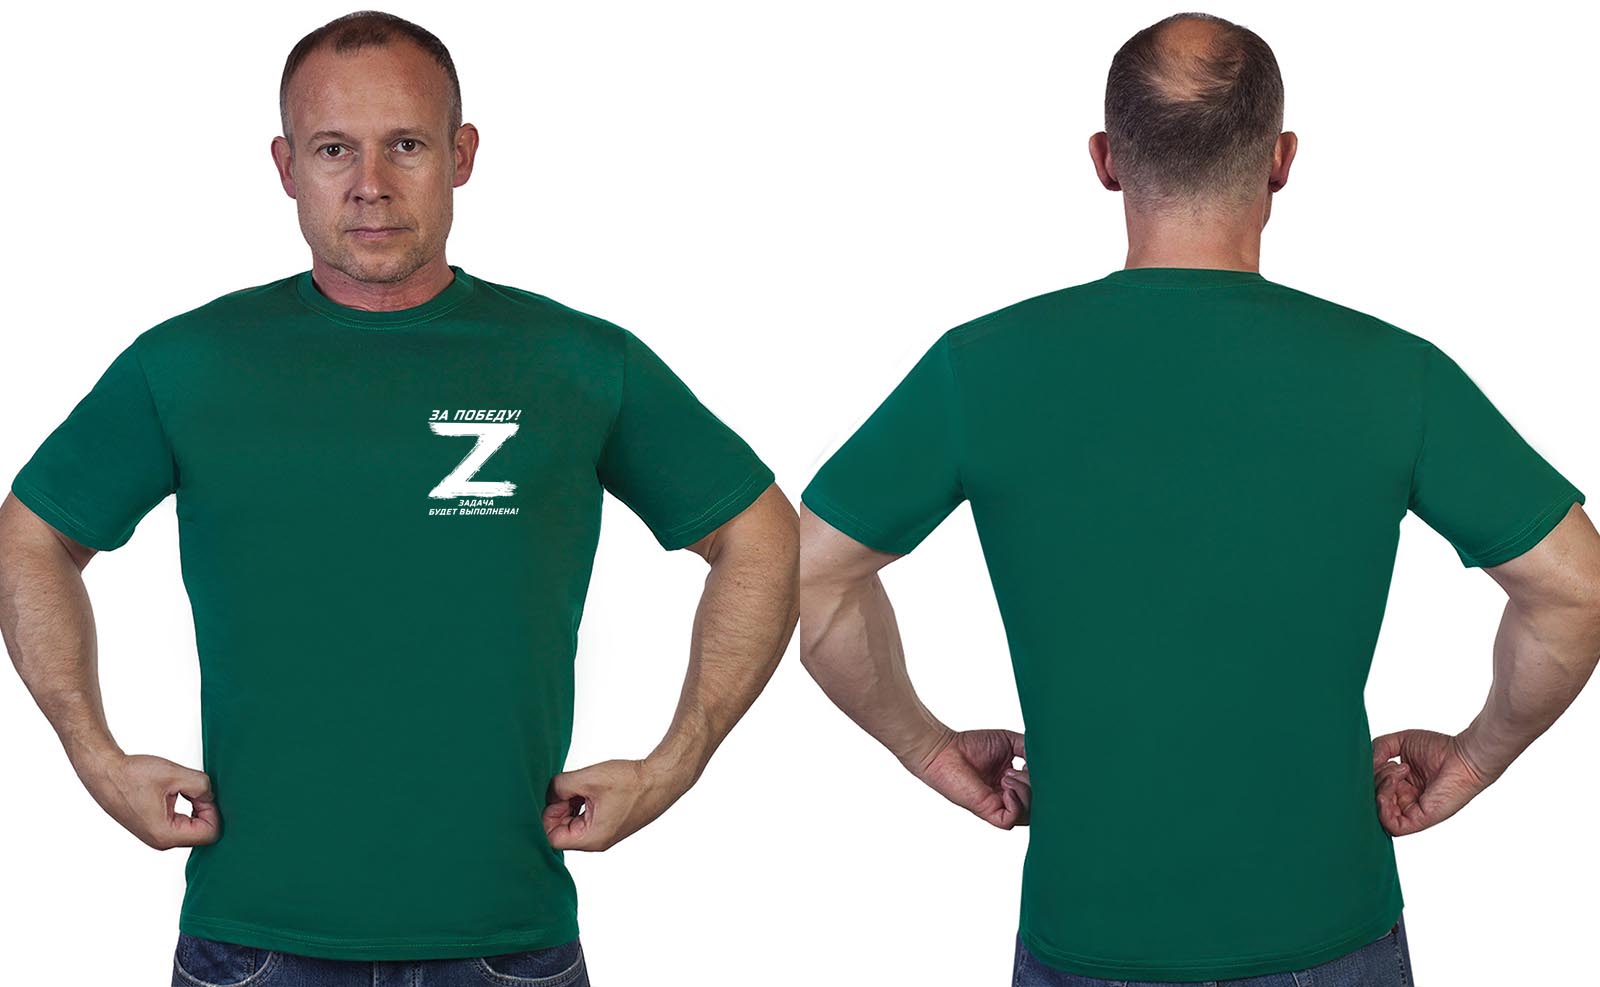 Зеленая мужская футболка Zа Победу по специальной цене